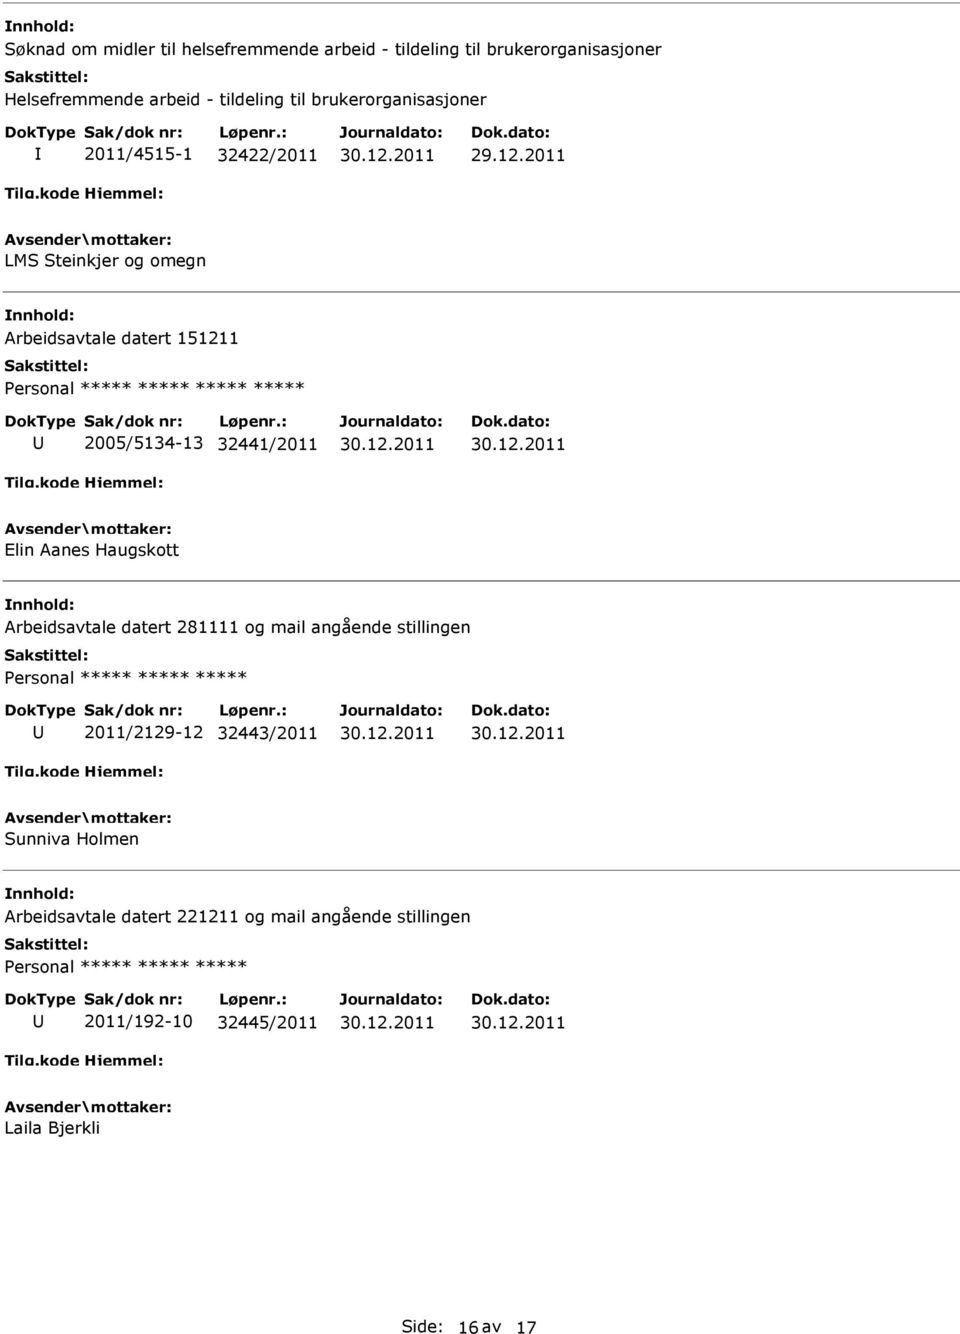 2011 LMS Steinkjer og omegn Arbeidsavtale datert 151211 ***** 2005/5134-13 32441/2011 Elin Aanes Haugskott